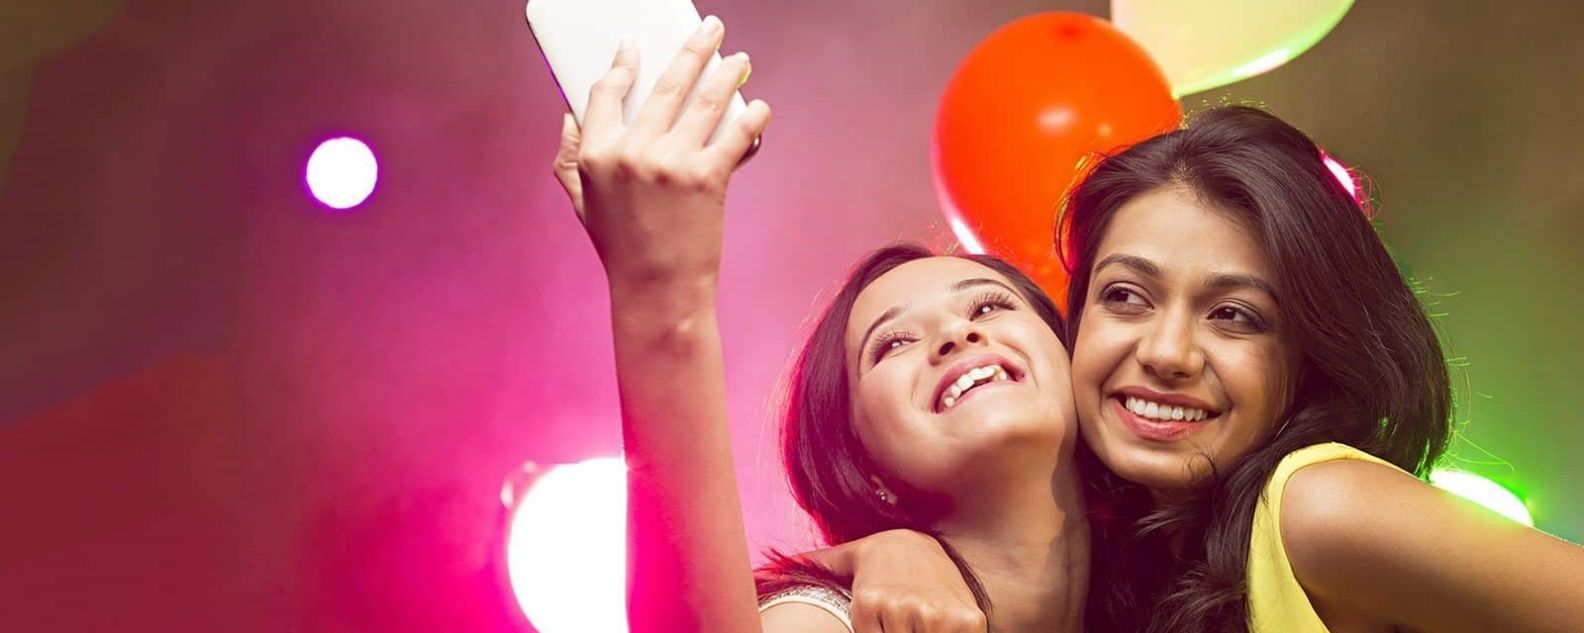 Zwei schöne Frauen machen ein Selfie mit einer Festivalfeier im Hintergrund